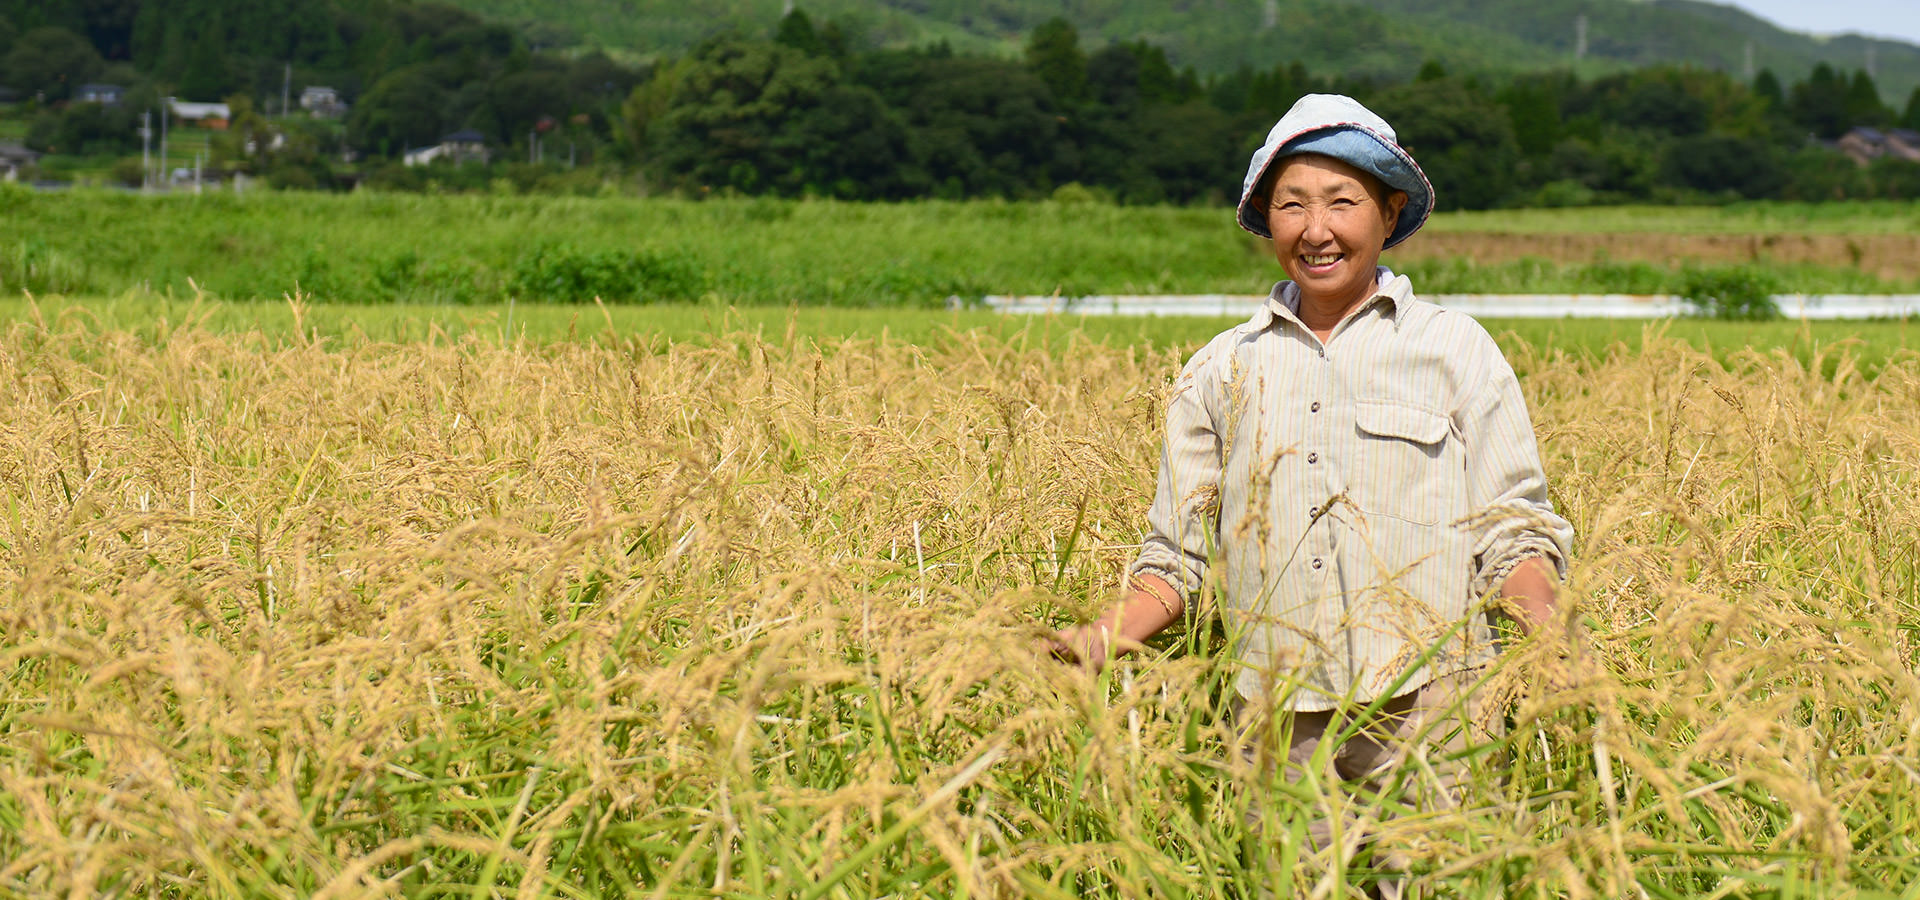 平成29年度、熊本南阿蘇産。高島和子さんが作る、無農薬・無施肥栽培のお米。